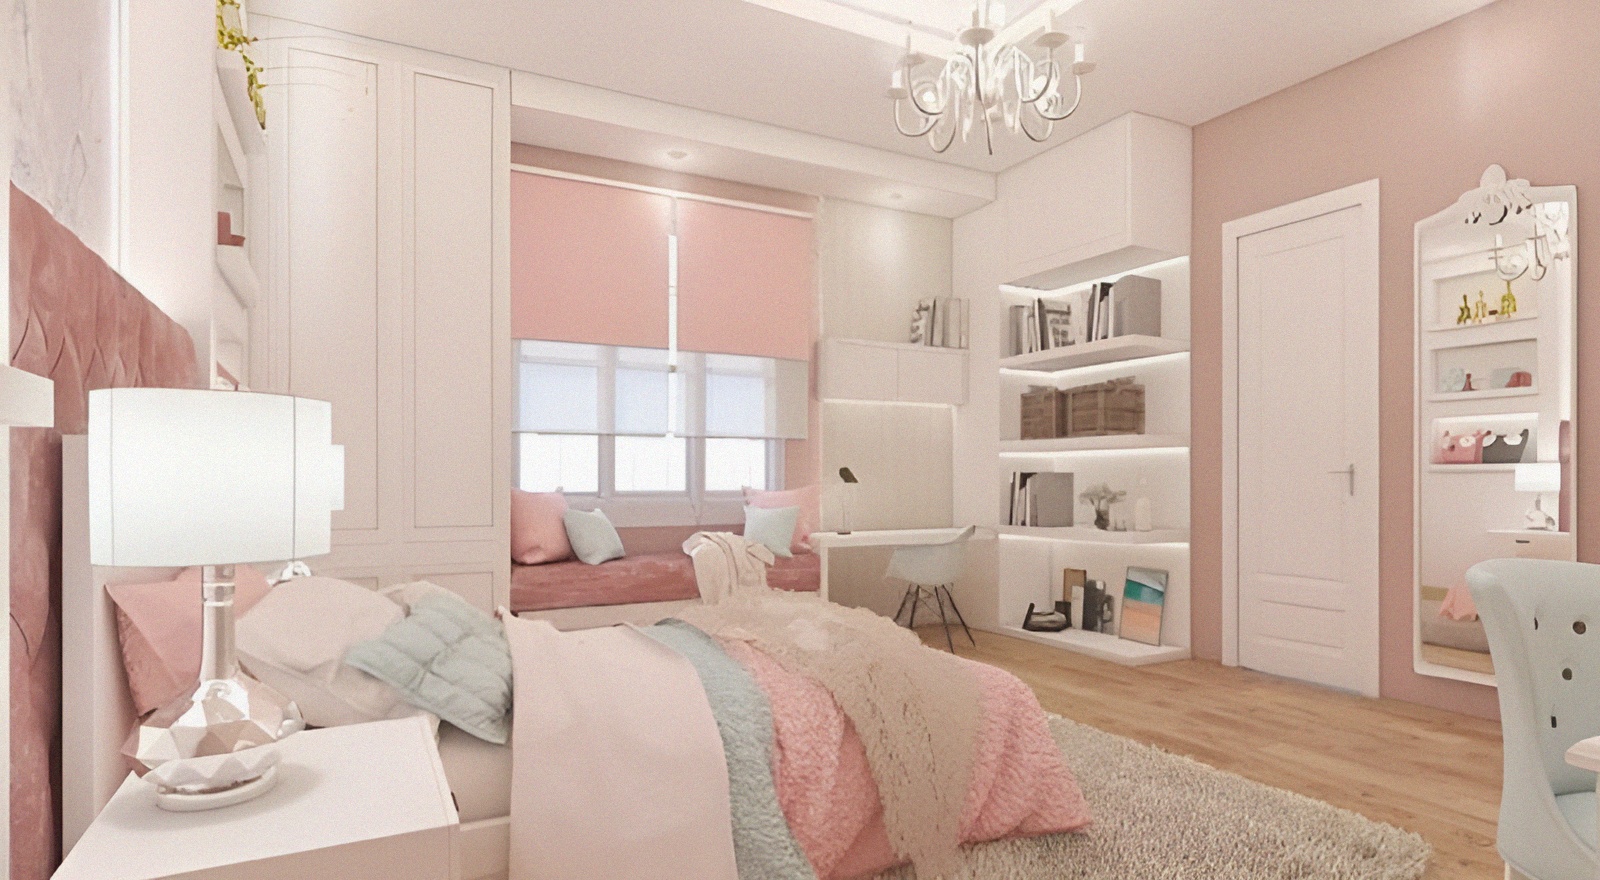 phòng ngủ màu hồng pastel